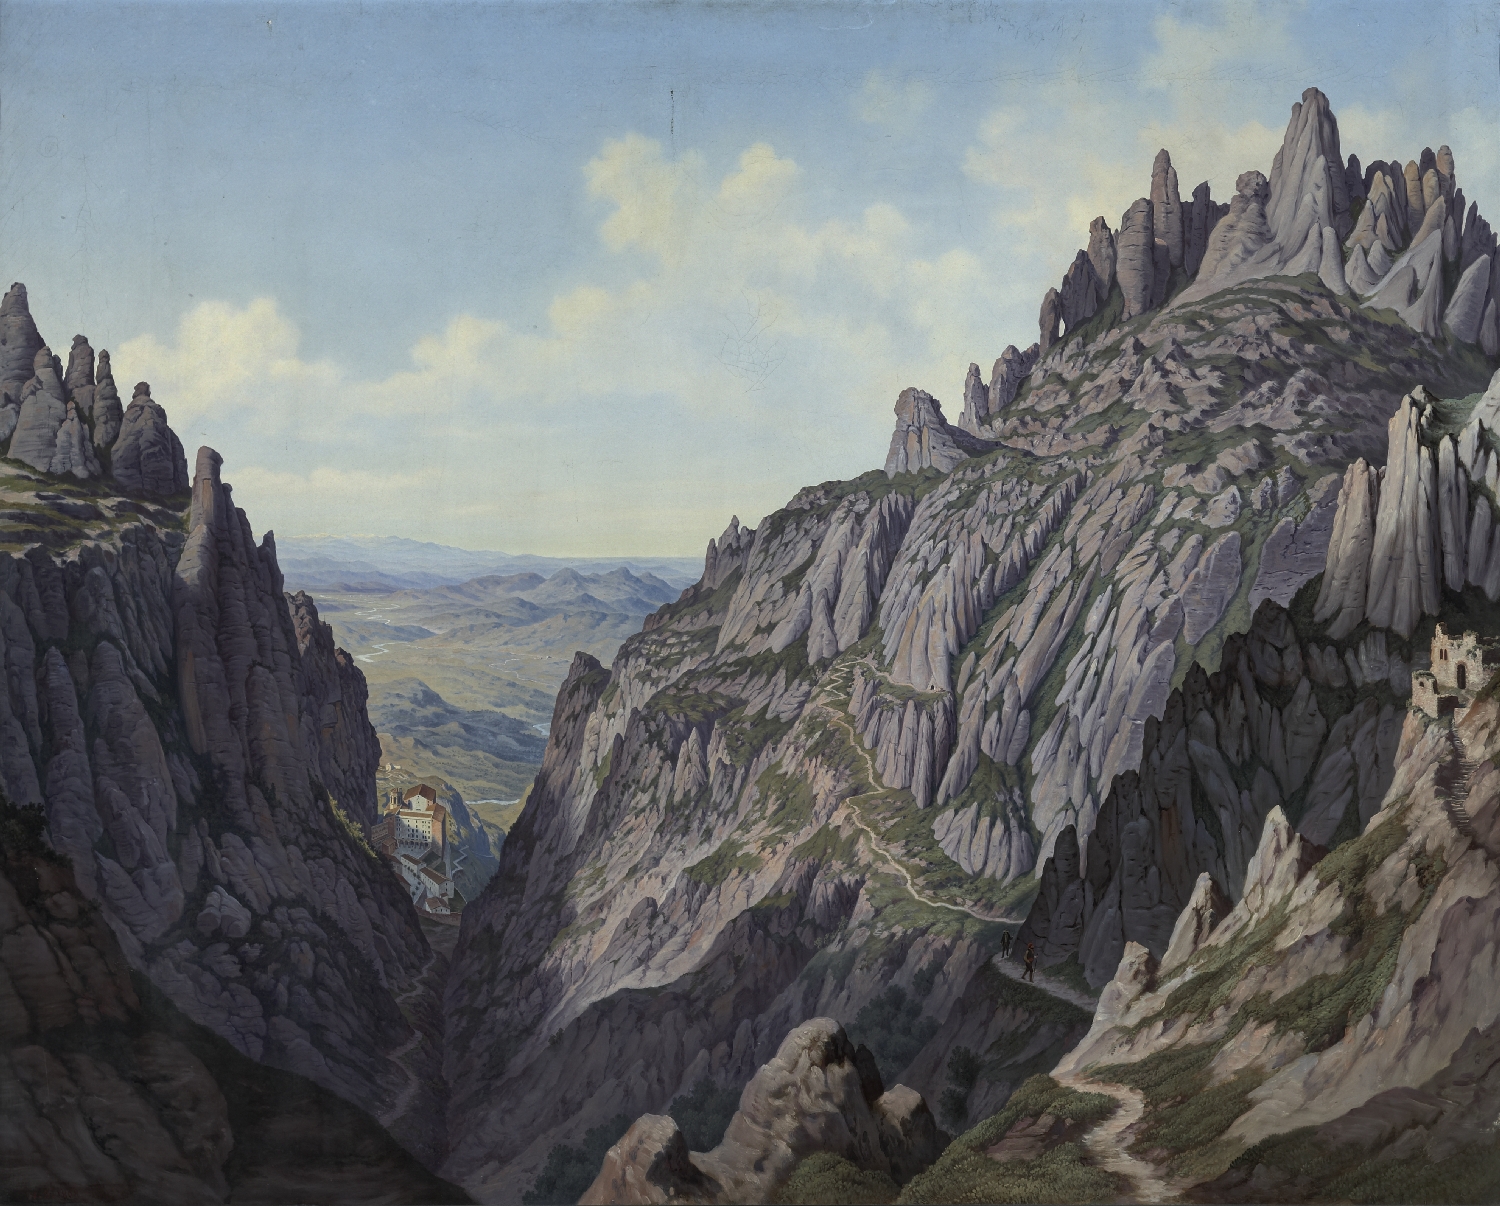 Aussicht vom Mon[t]serrat in Catalonien, 1868, Öl auf Leinwand, Inv.-Nr. 9016-49